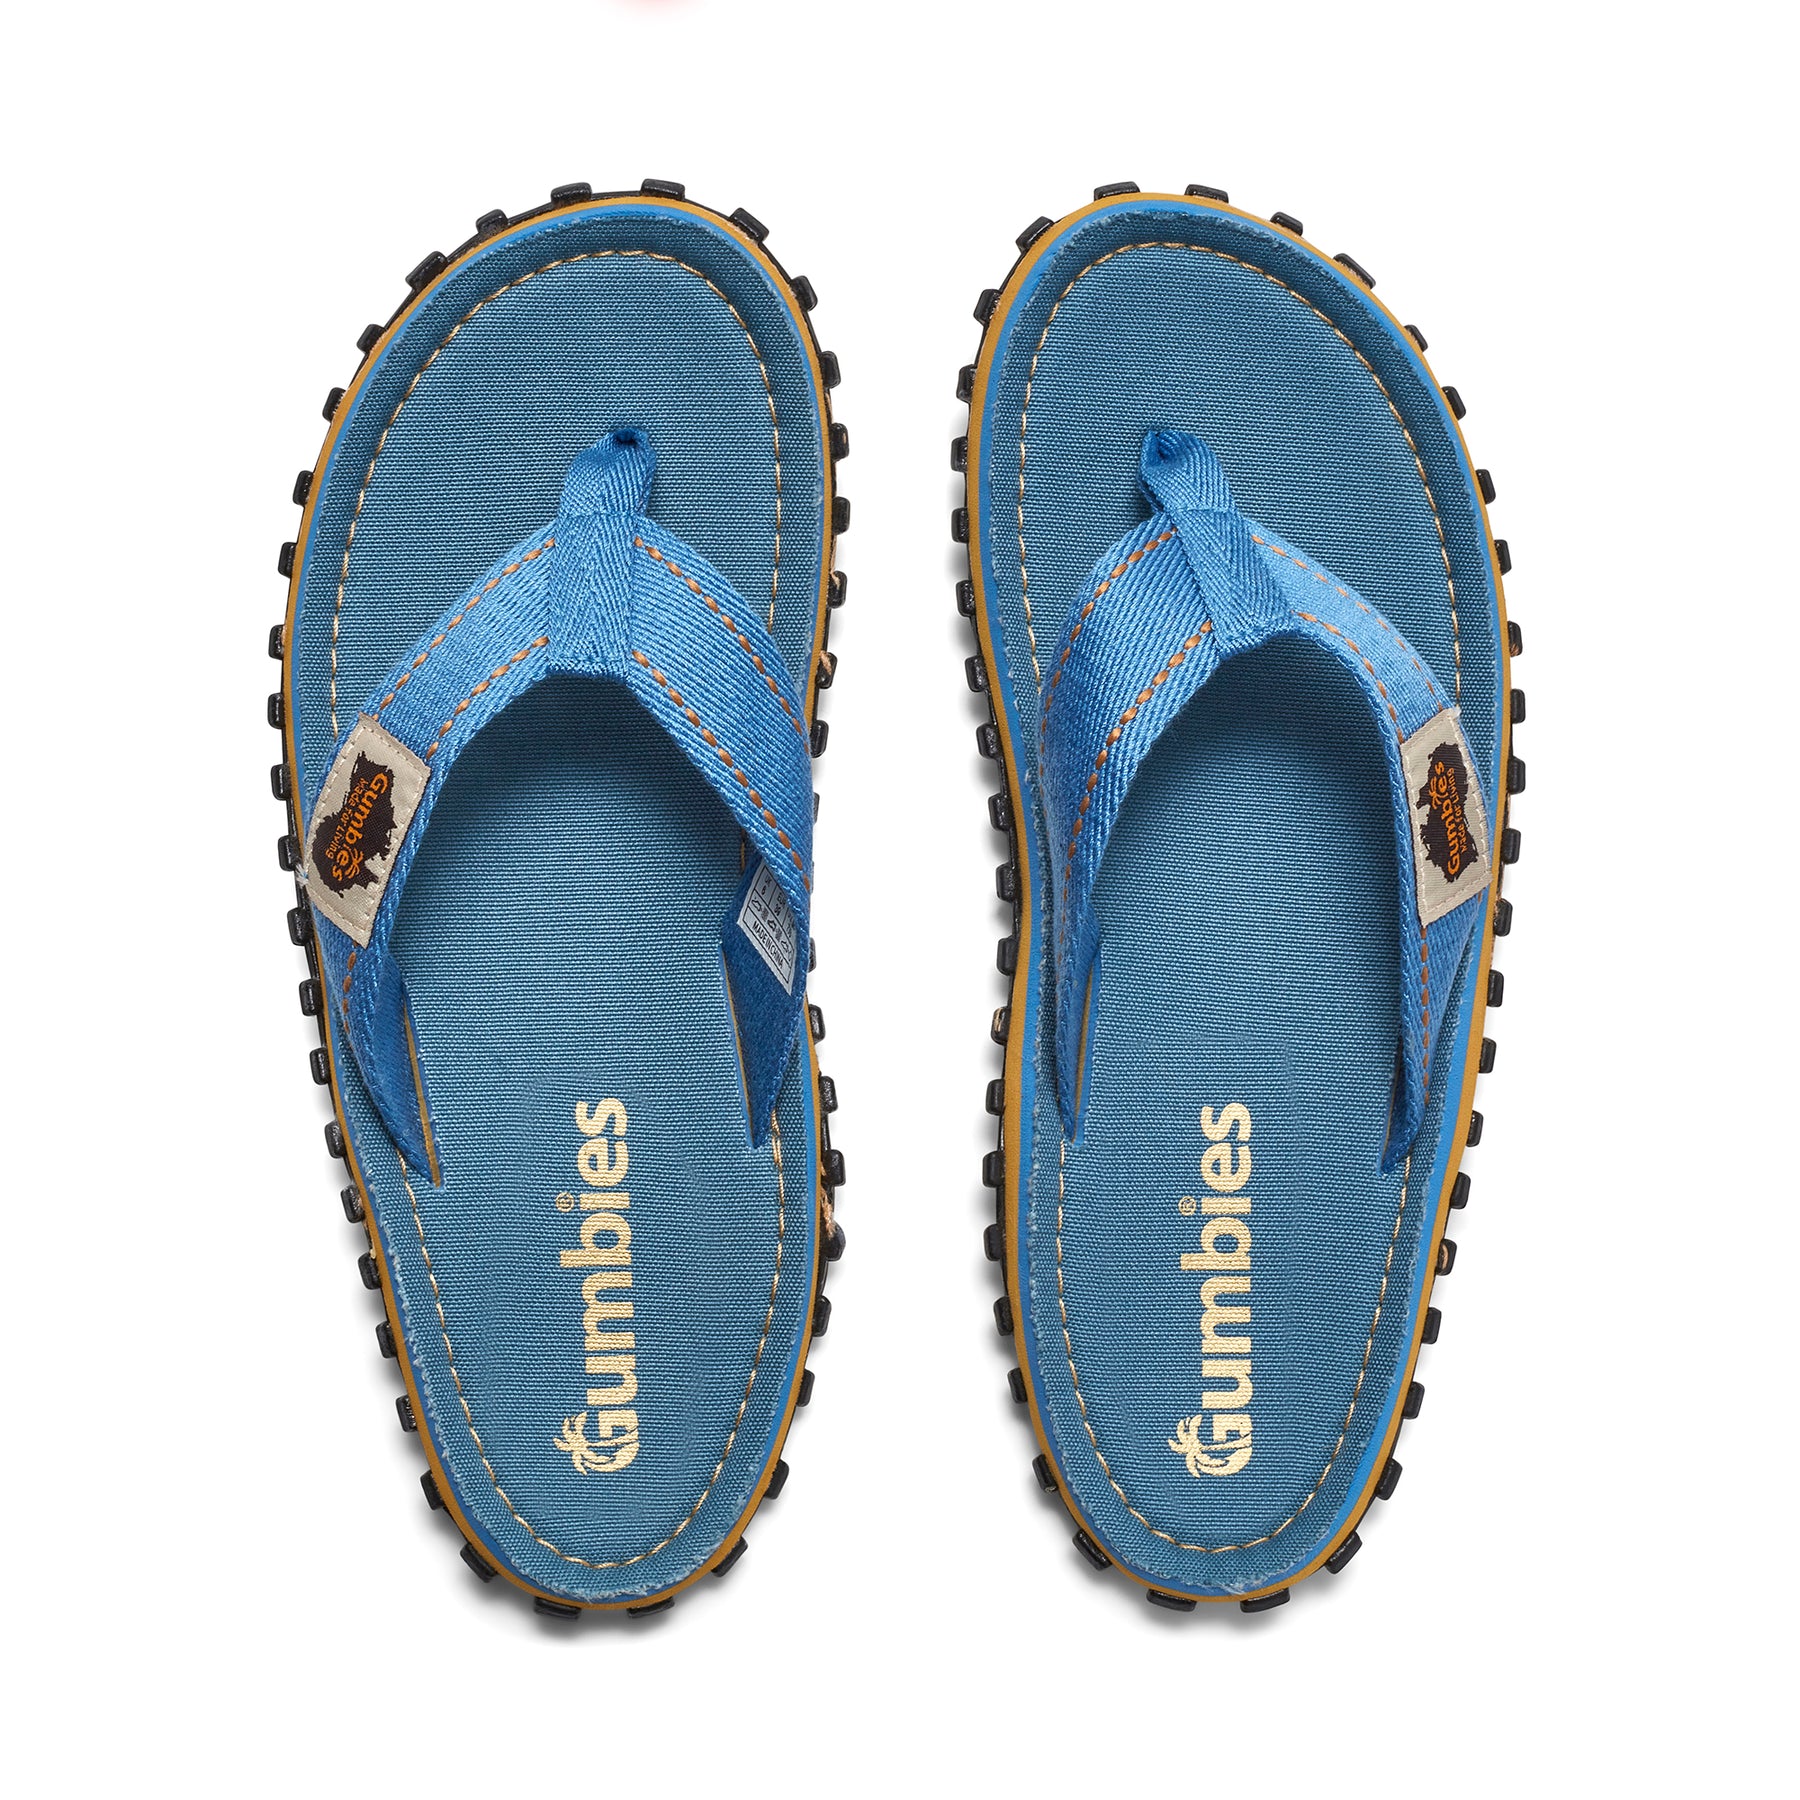 Islander Flip-Flops - Women's - Classic Light Blue – Gumbies